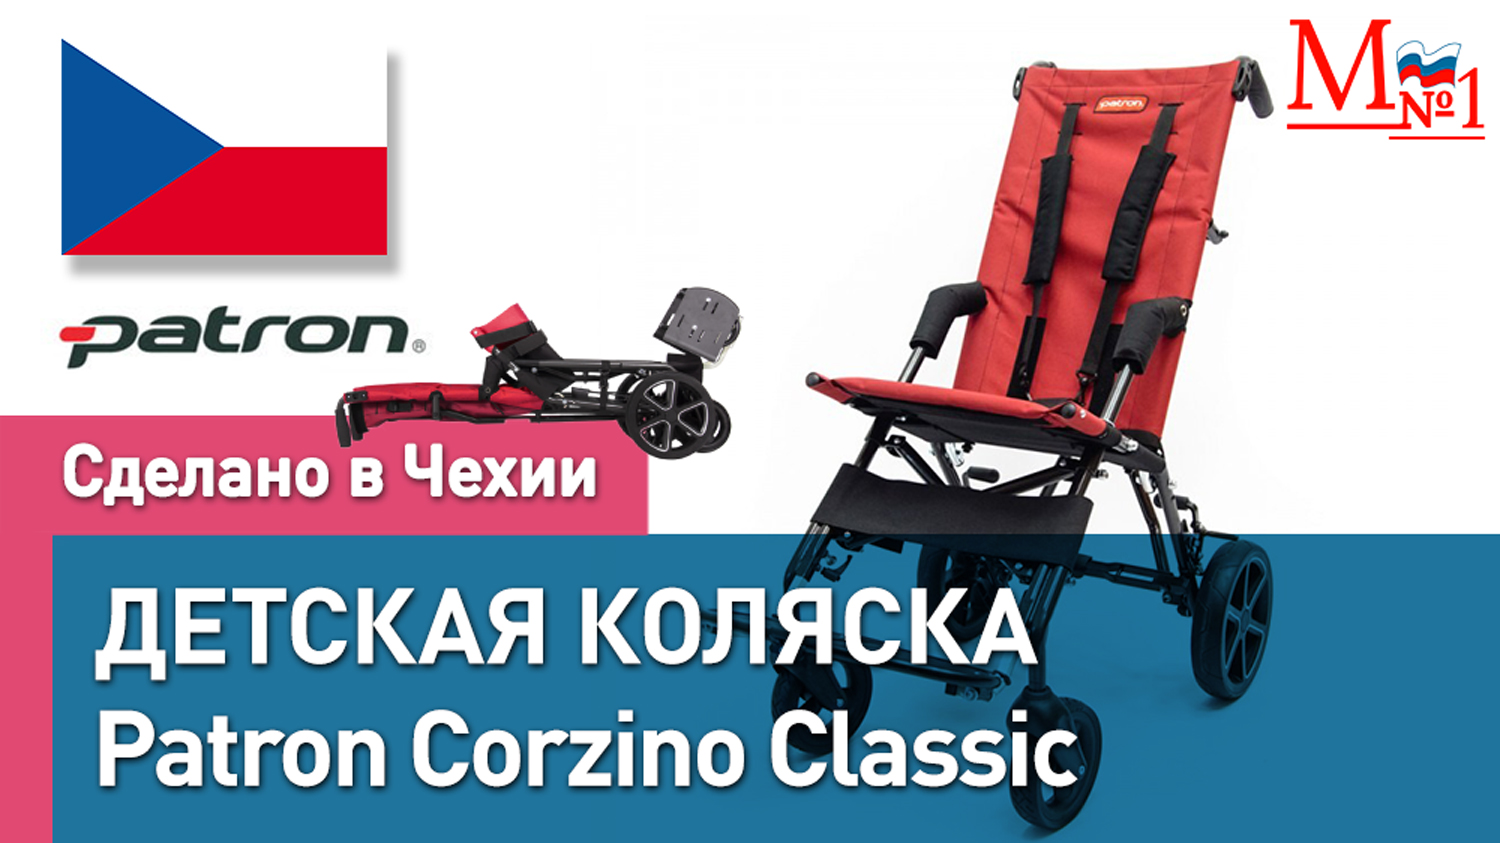 Детская инвалидная складная коляска Patron Corzino Classic для детей с ДЦП из Чехии от Медтехника №1